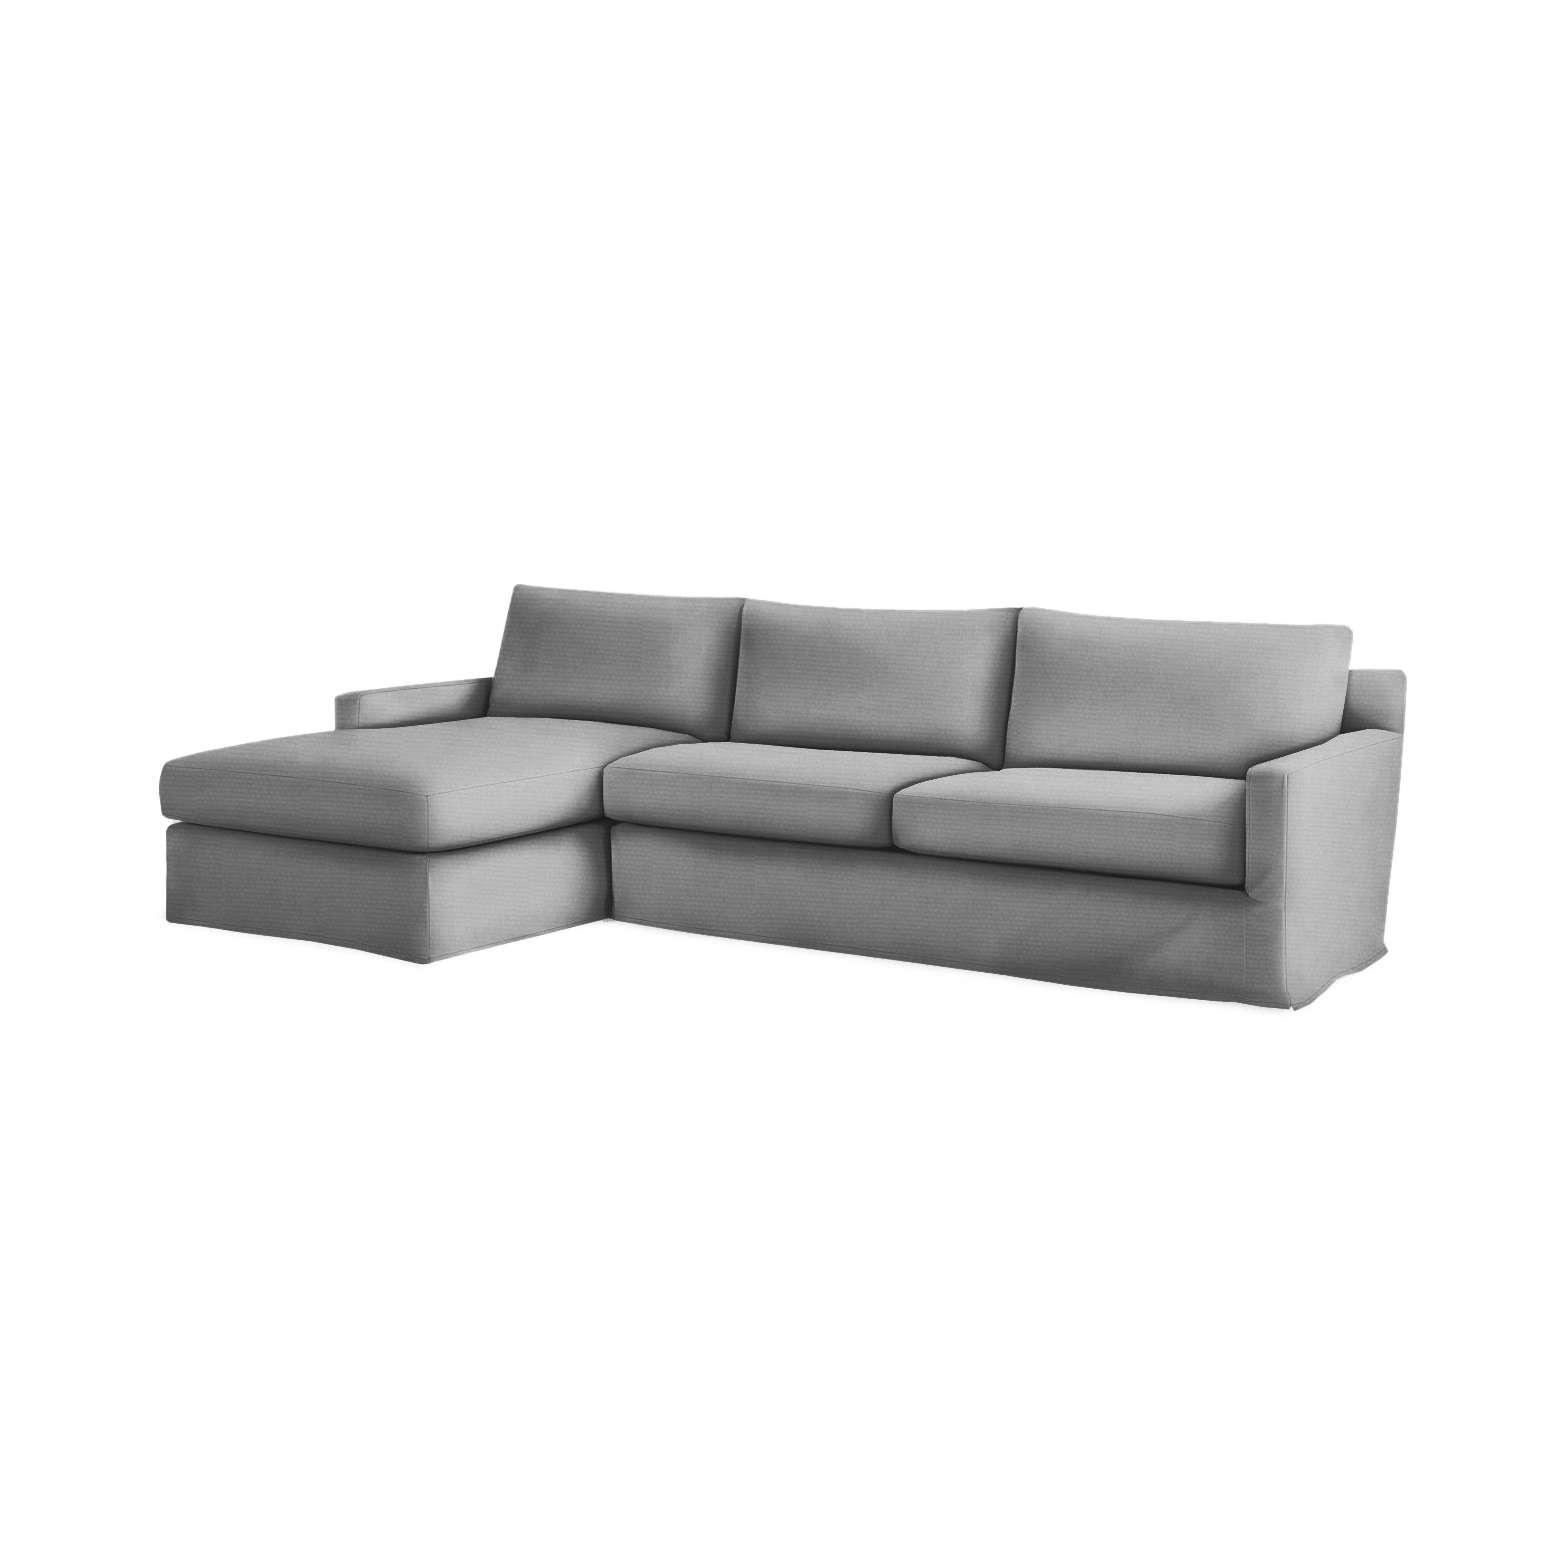 COM Sectional Sofa